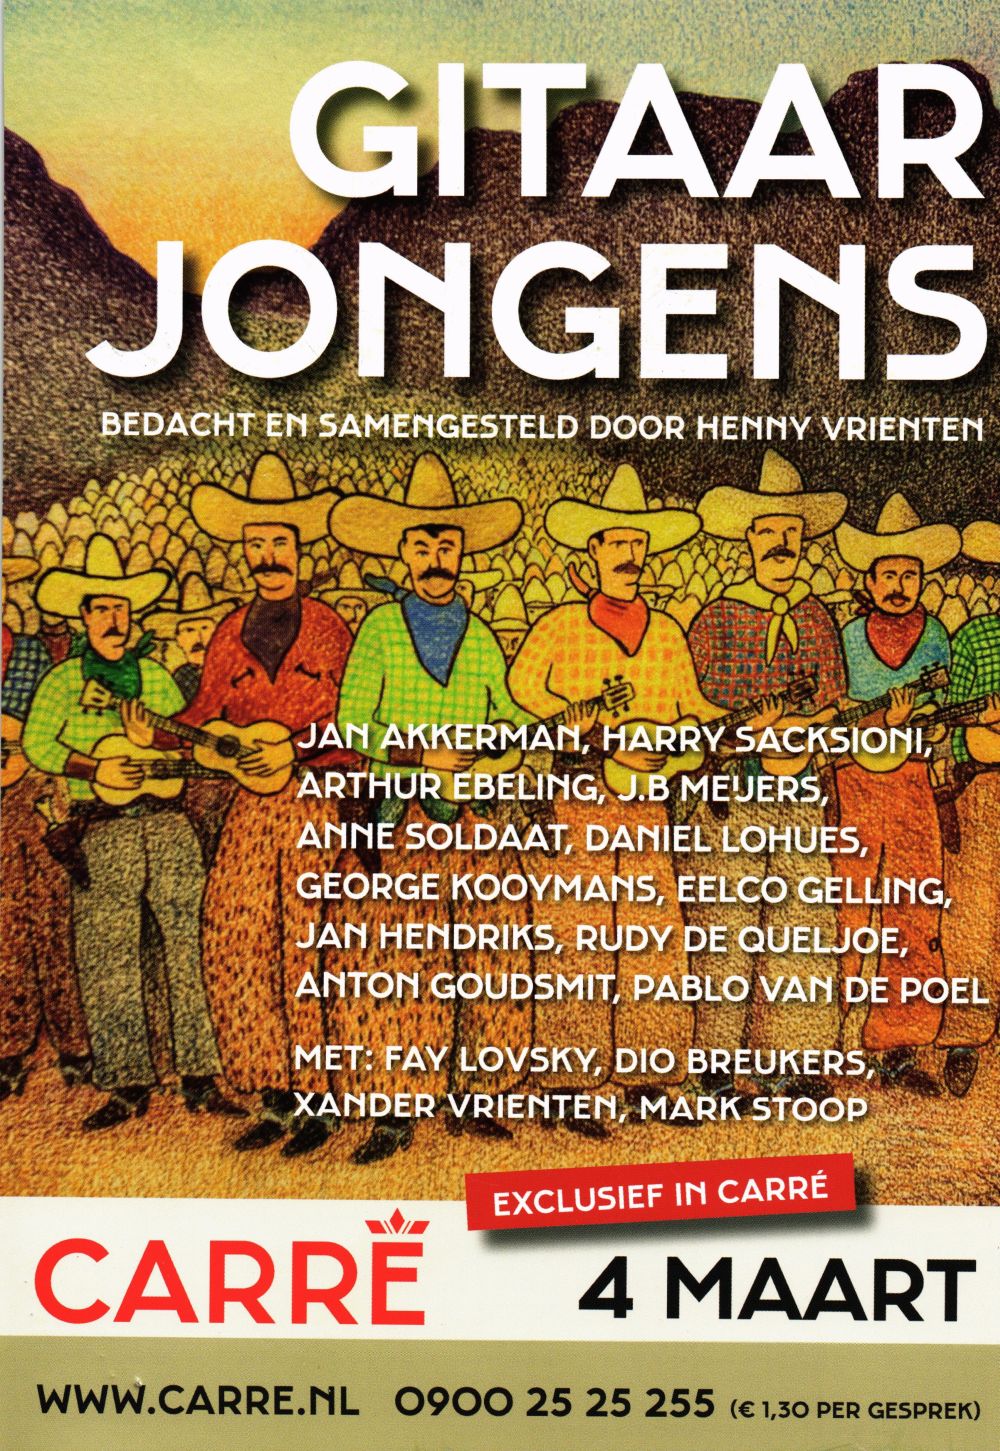 Gitaarjongens show flyer front Amsterdam Carré March 04 2013